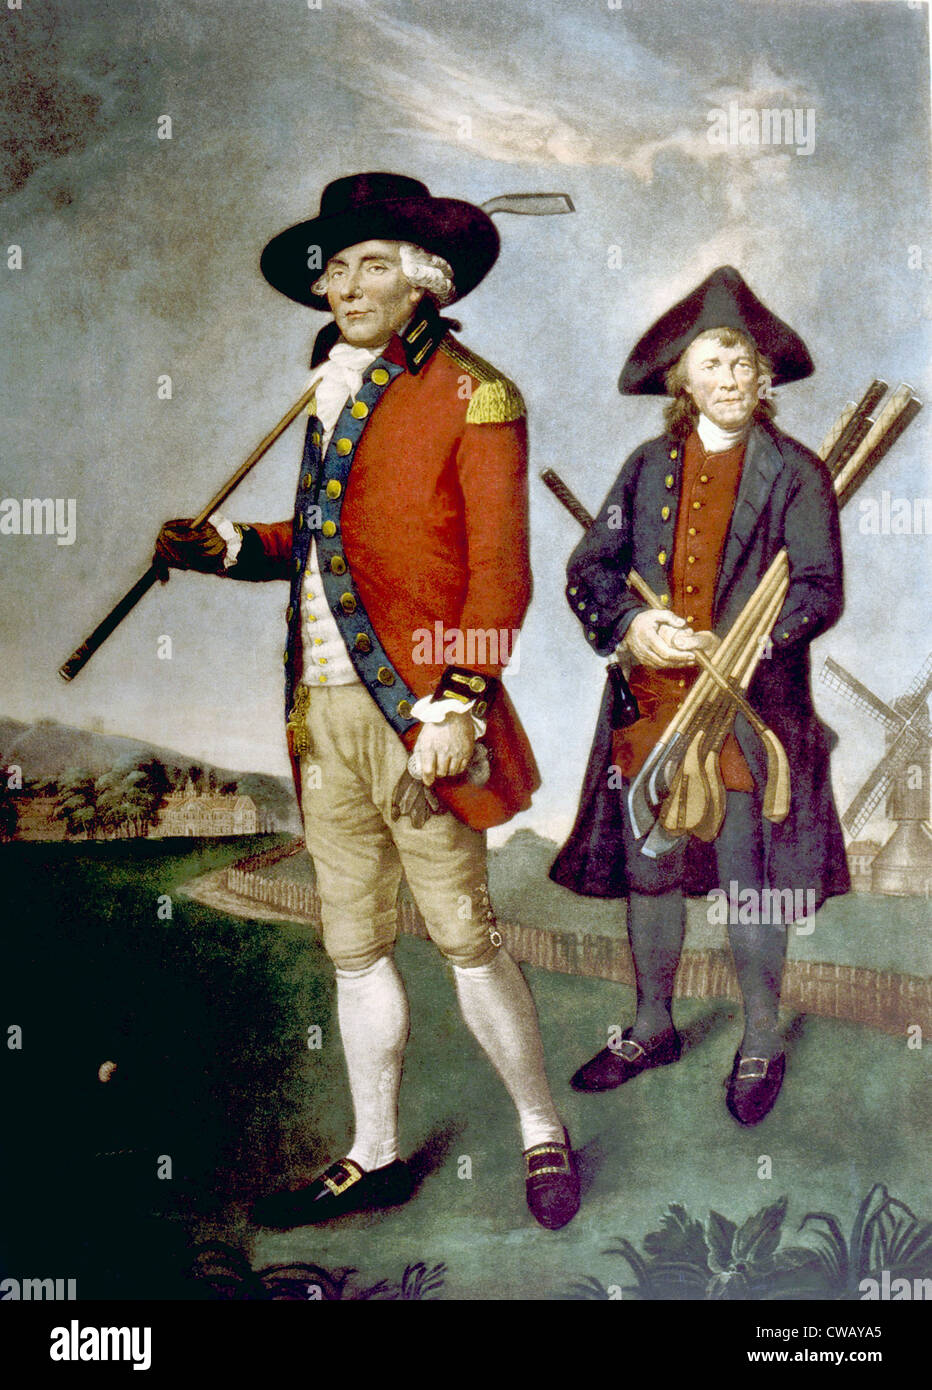 Schottische Golfer und sein Caddy, Gemälde von j. F. Abbott, 1790. Stockfoto